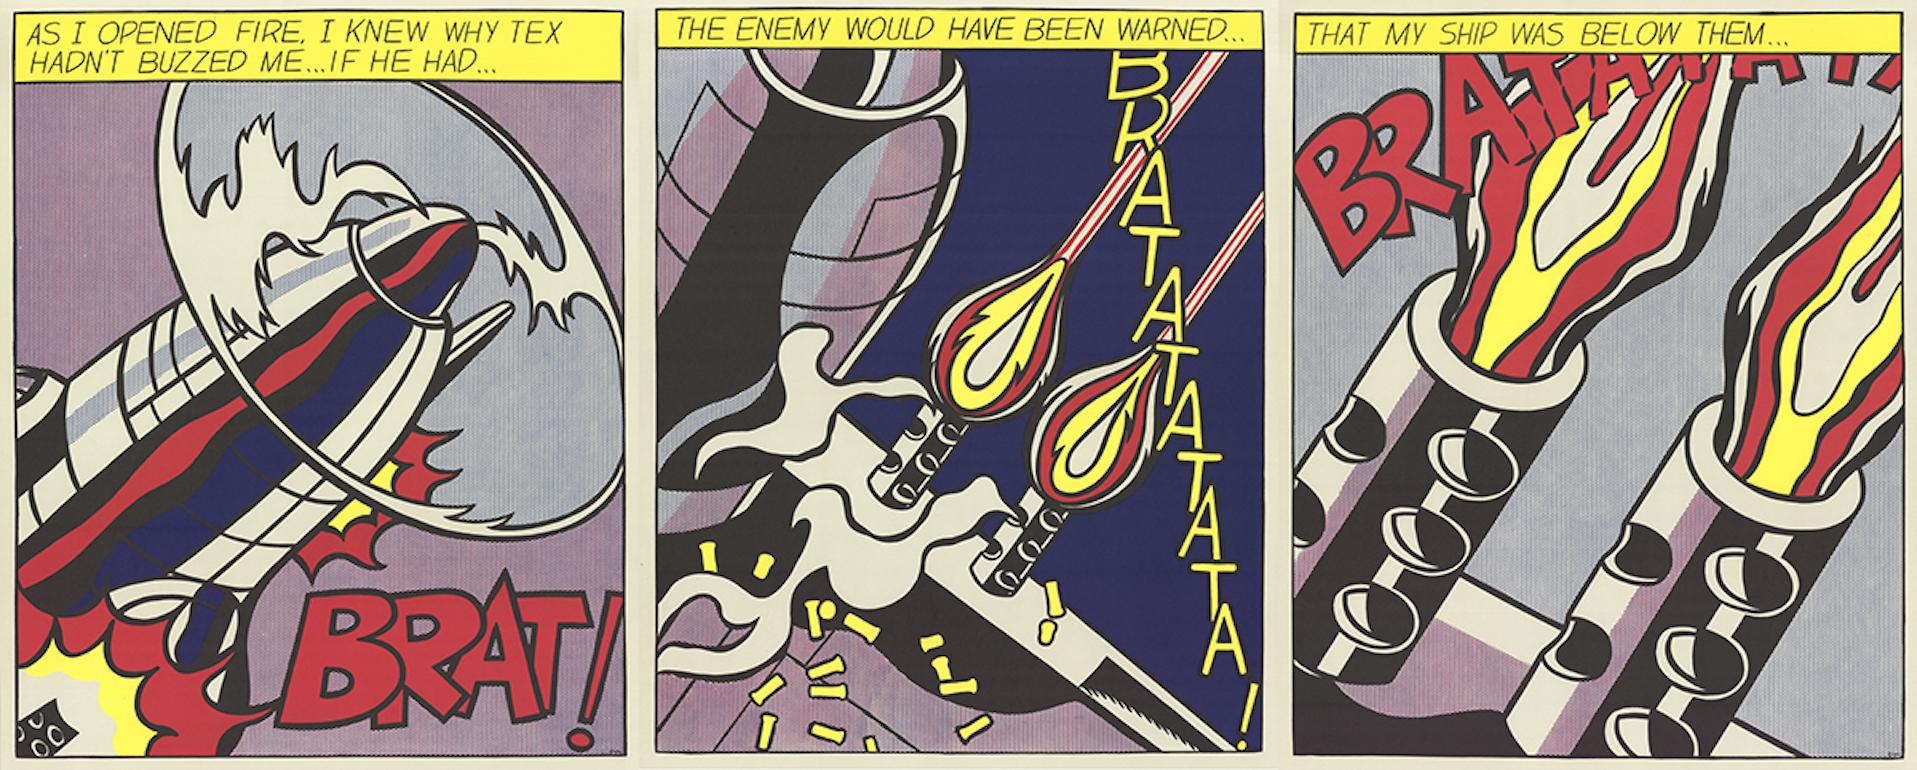 Roy Lichtenstein-As I Opened Fire (Triptychon)-FOURTH EDITION